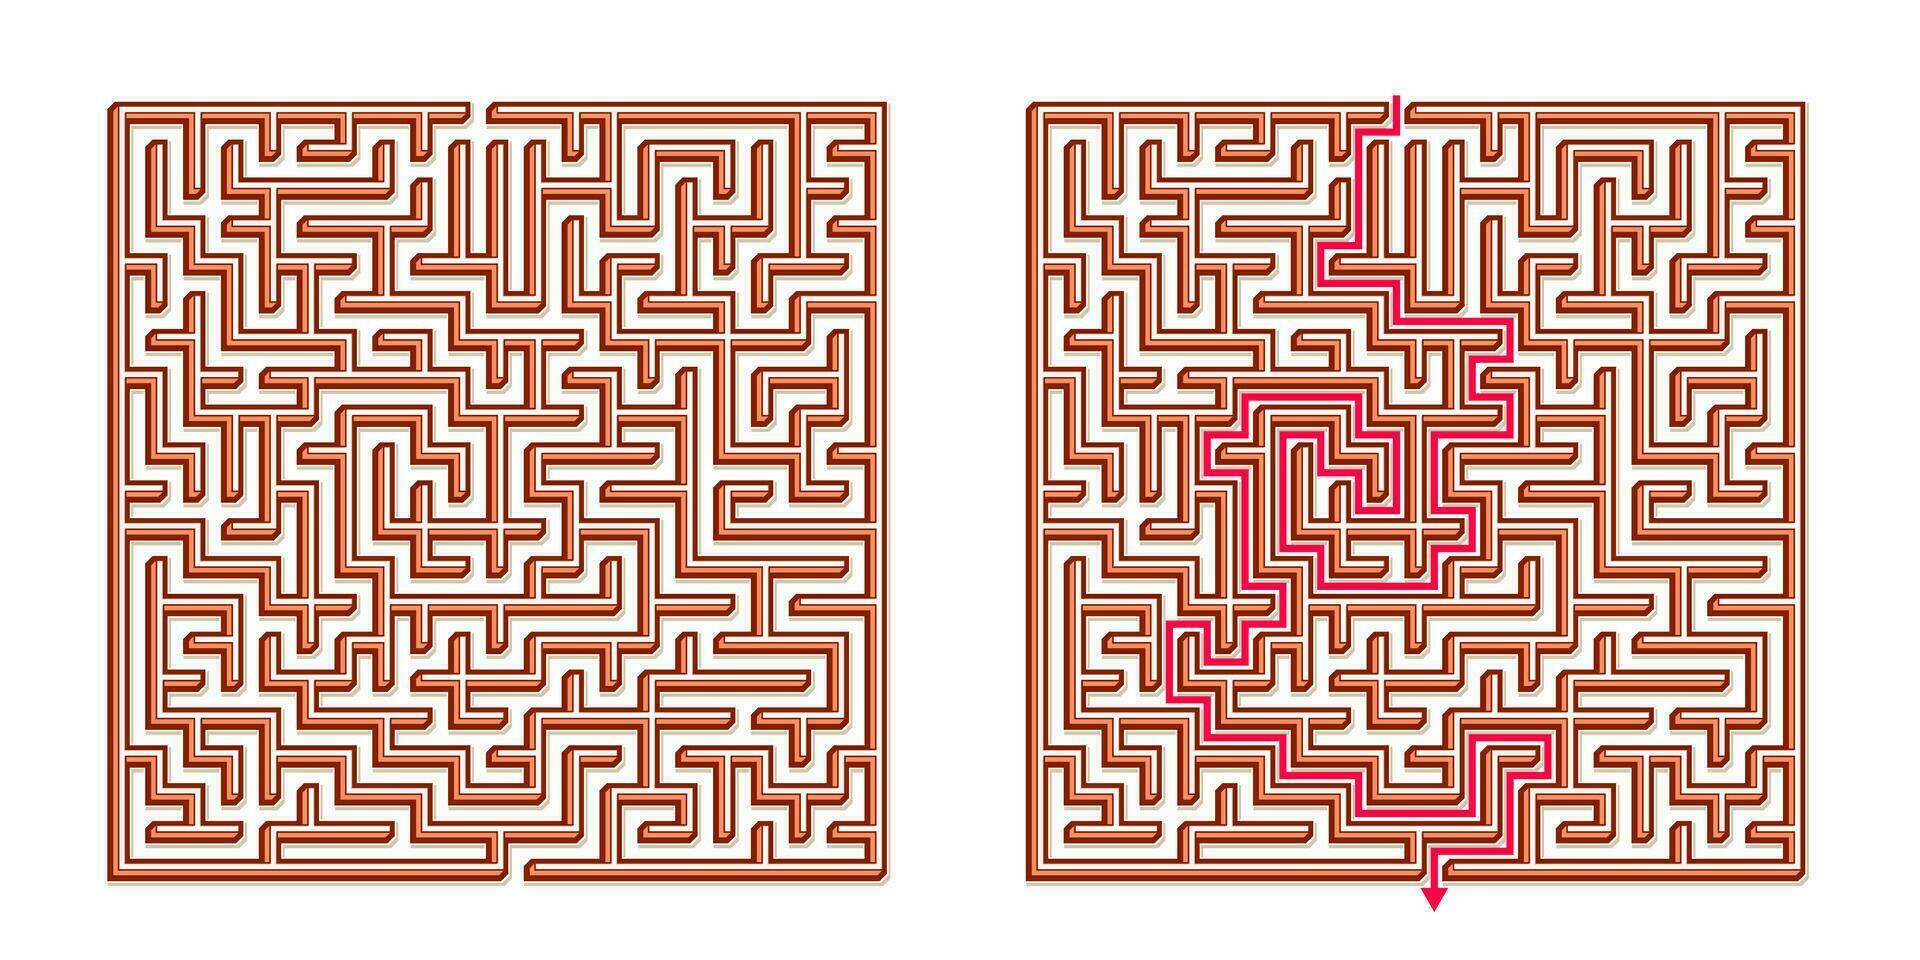 vetor 3d isométrico fácil quadrado Labirinto - labirinto com incluído solução. engraçado educacional mente jogos para coordenação, problemas resolvendo, decisão fazer Habilidades teste.